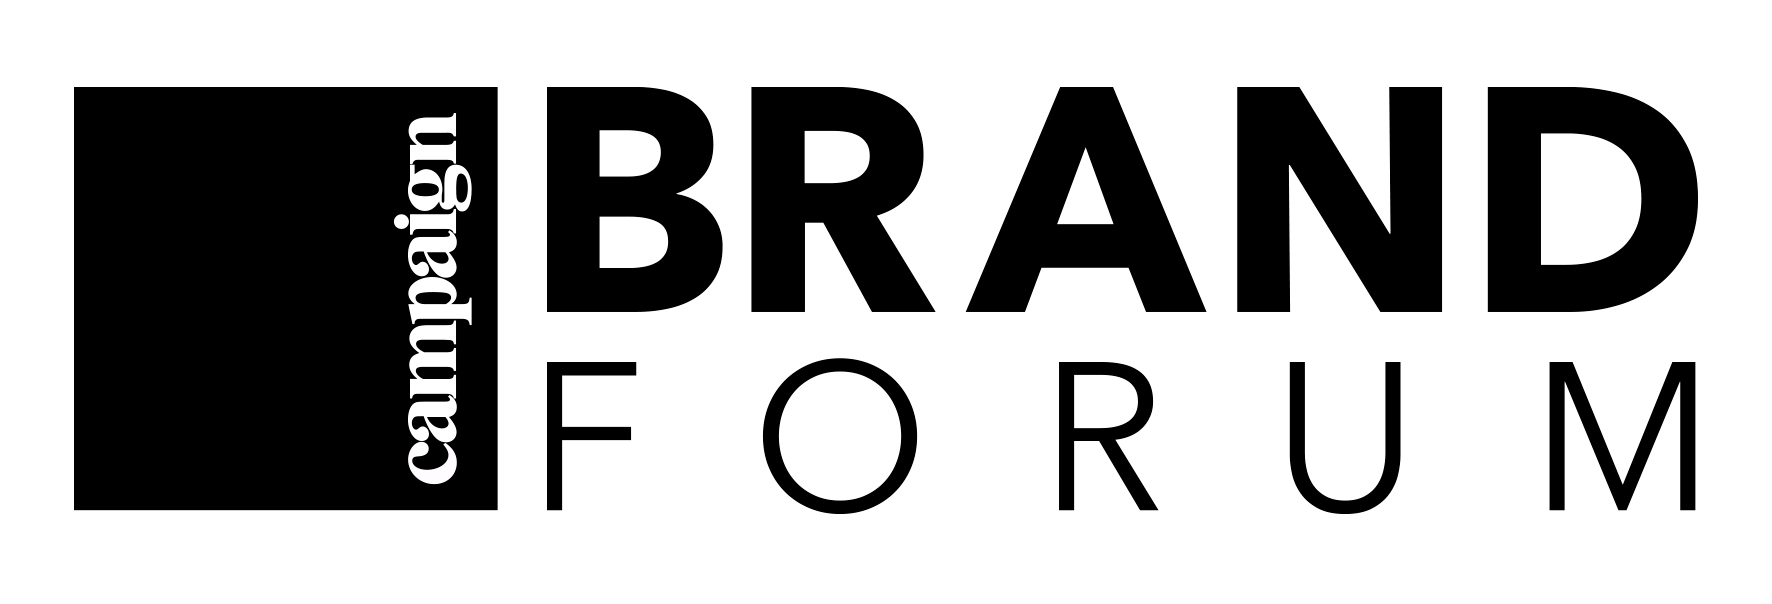 Campaign Brand Forum logo